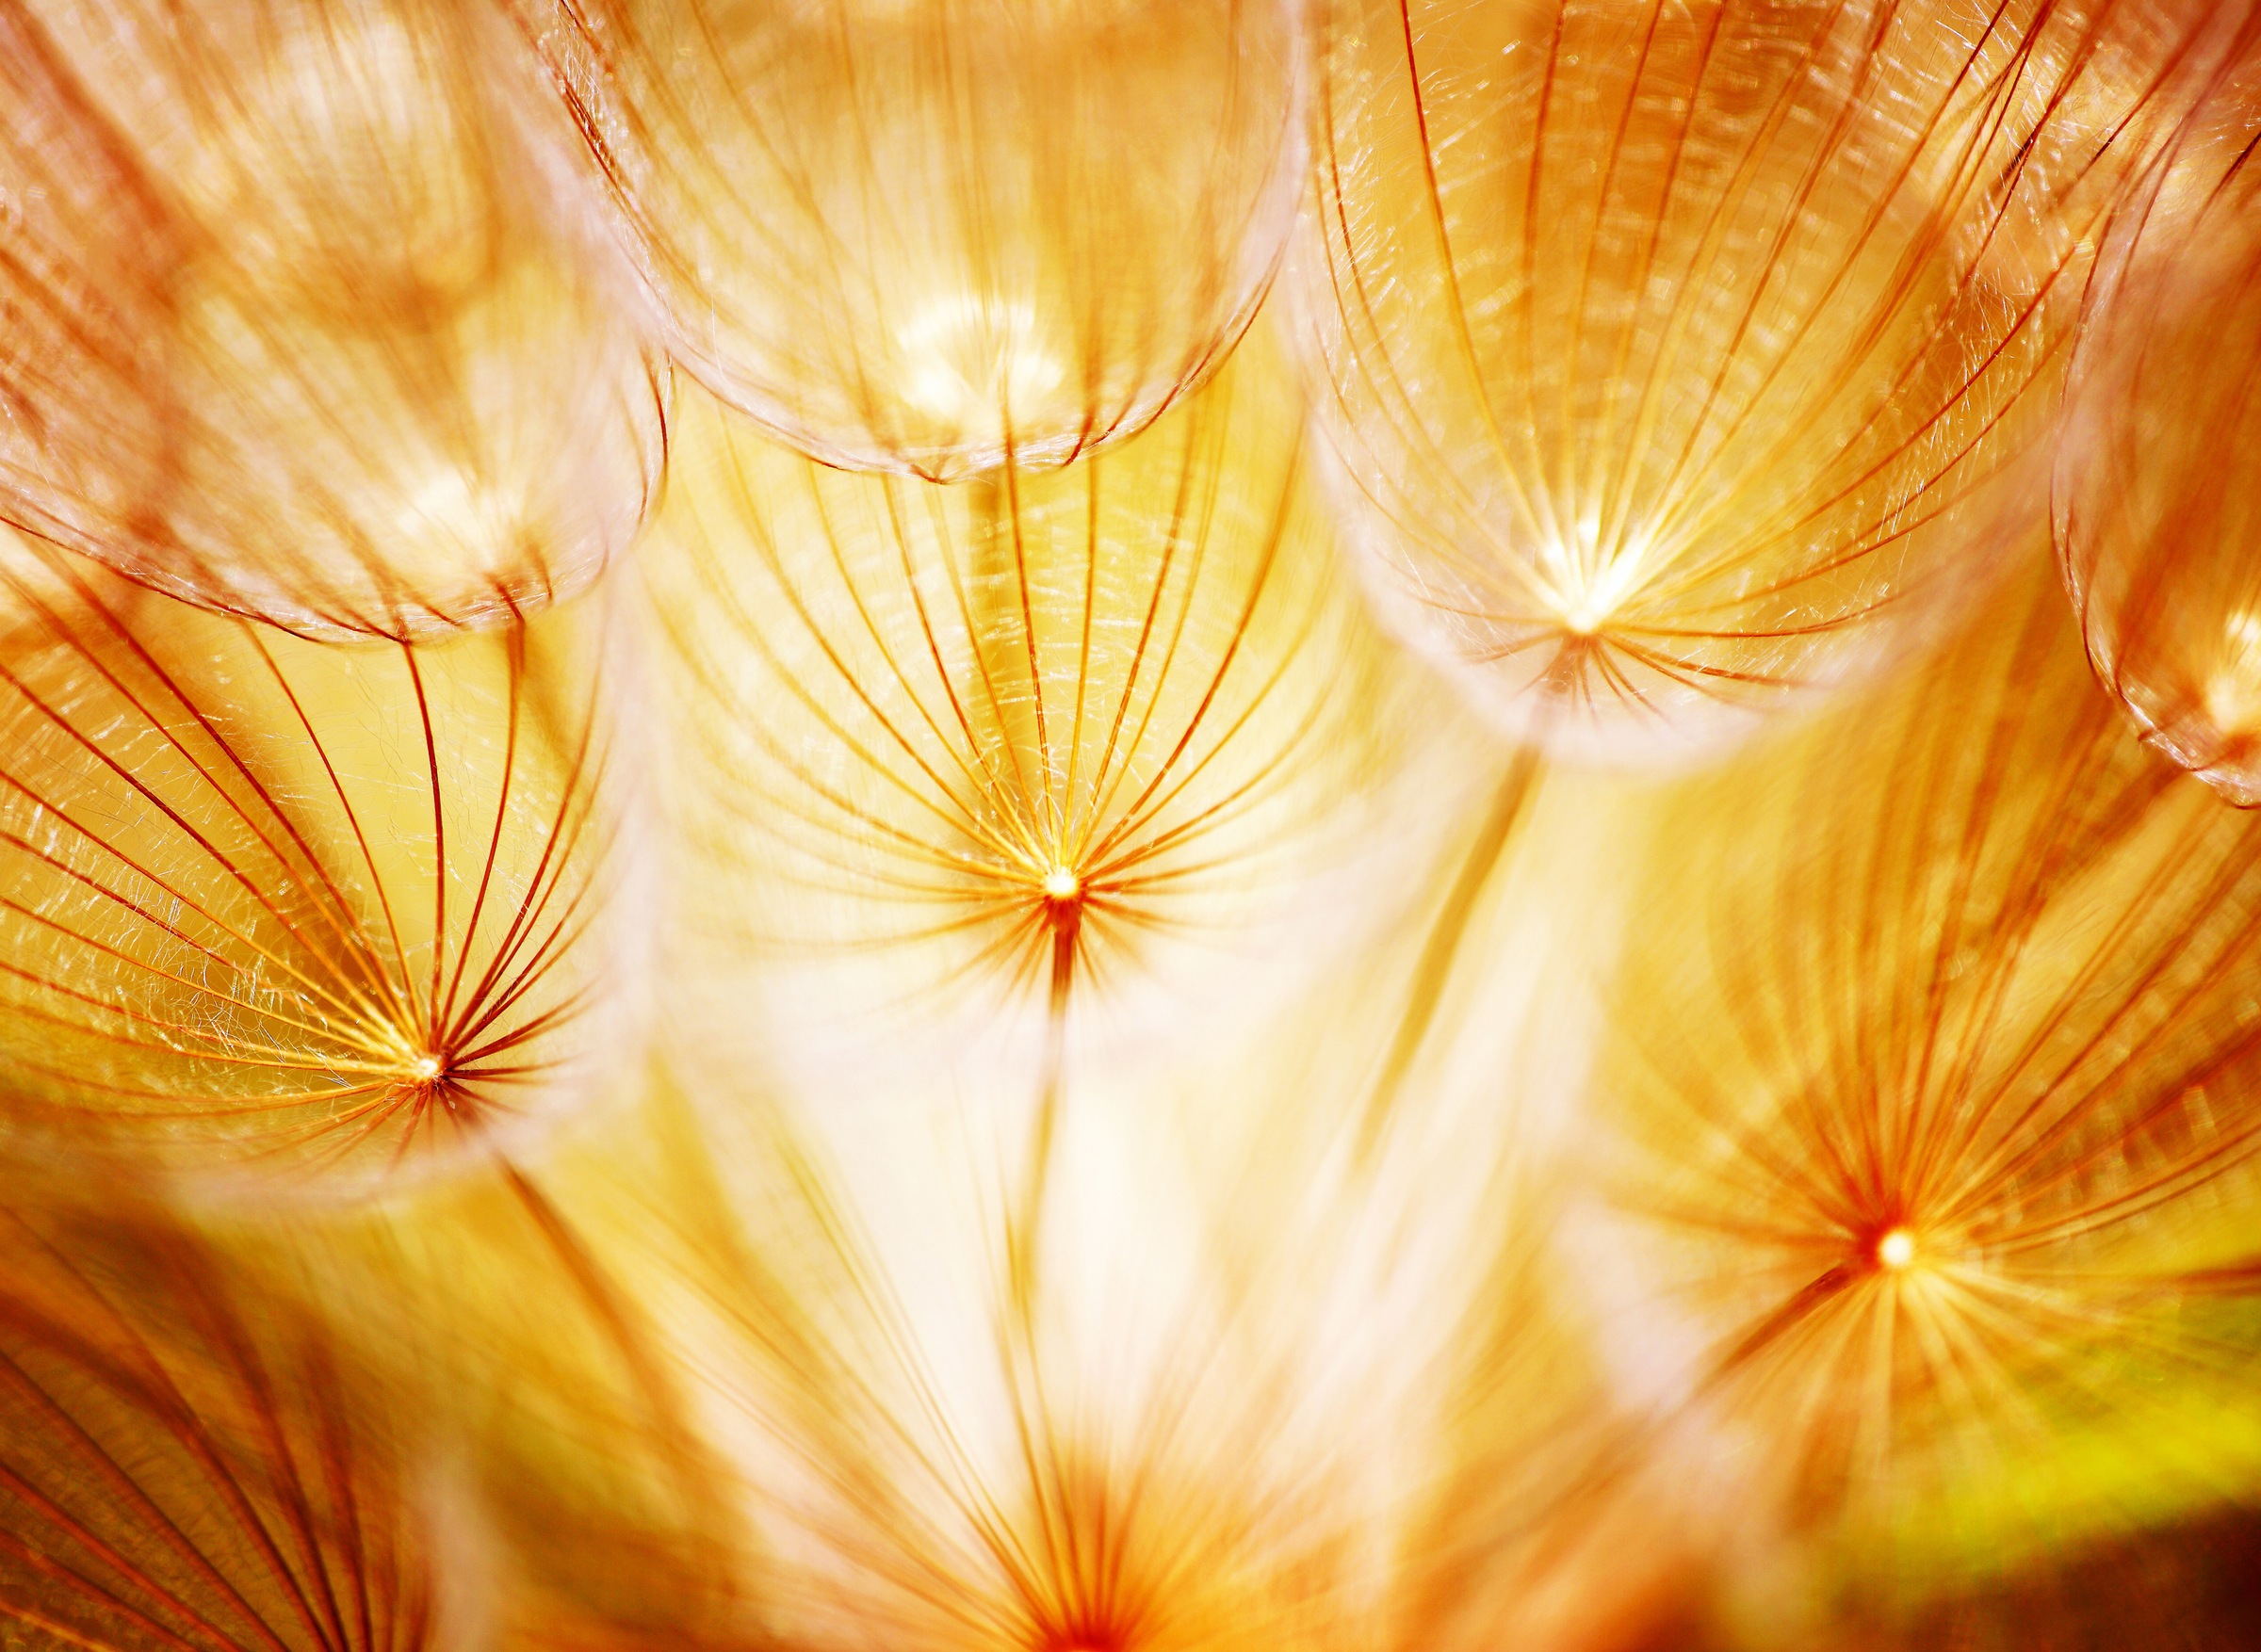 Fototapete »Soft Dandelion Flowers«